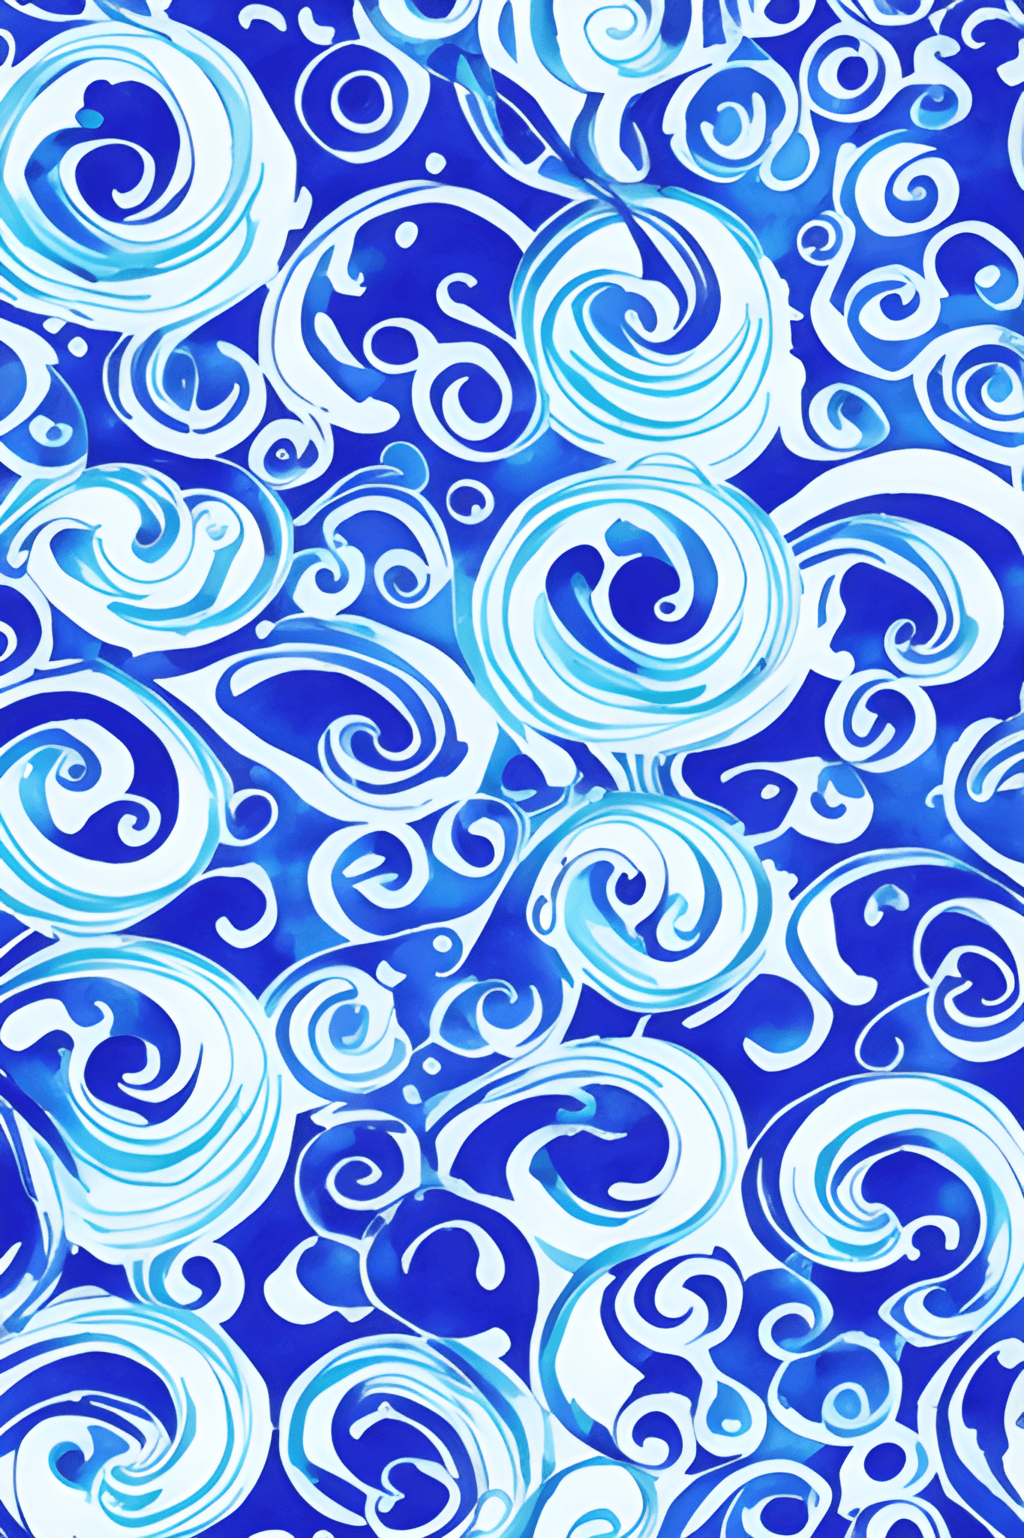 Blue Flowers Swirls Patterns Background Blue on Blue Watercolor ...